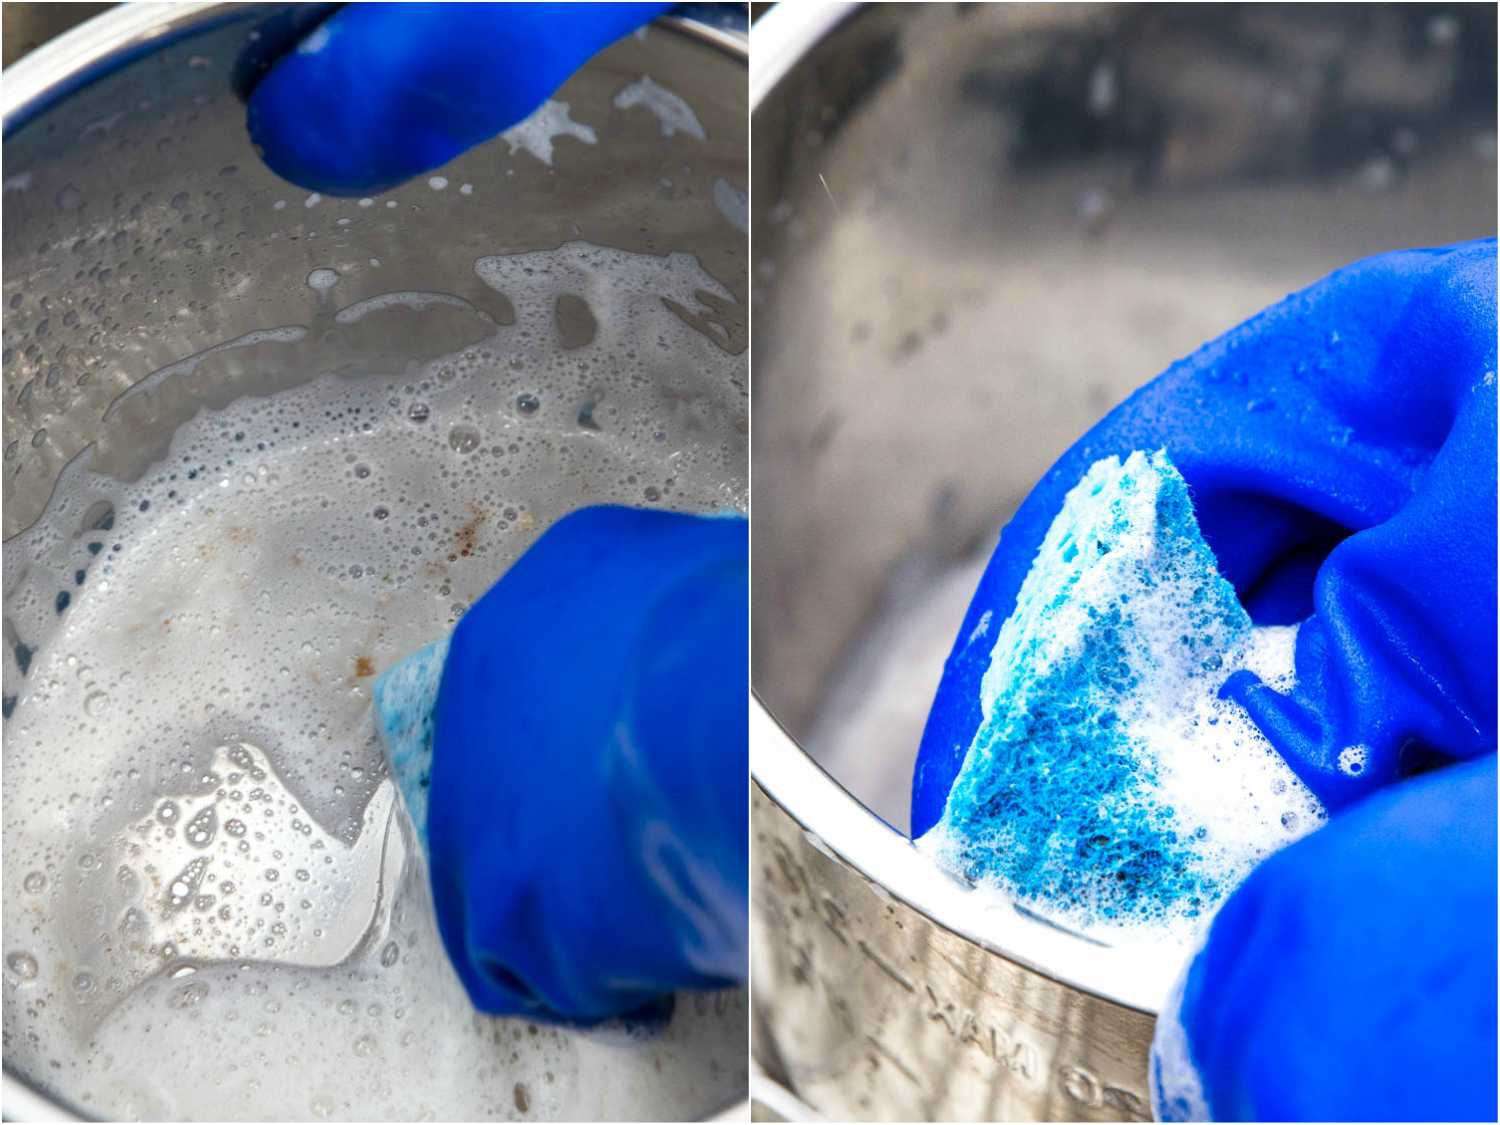 拼贴的两张照片显示了用热肥皂水擦洗不锈钢锅的不同阶段